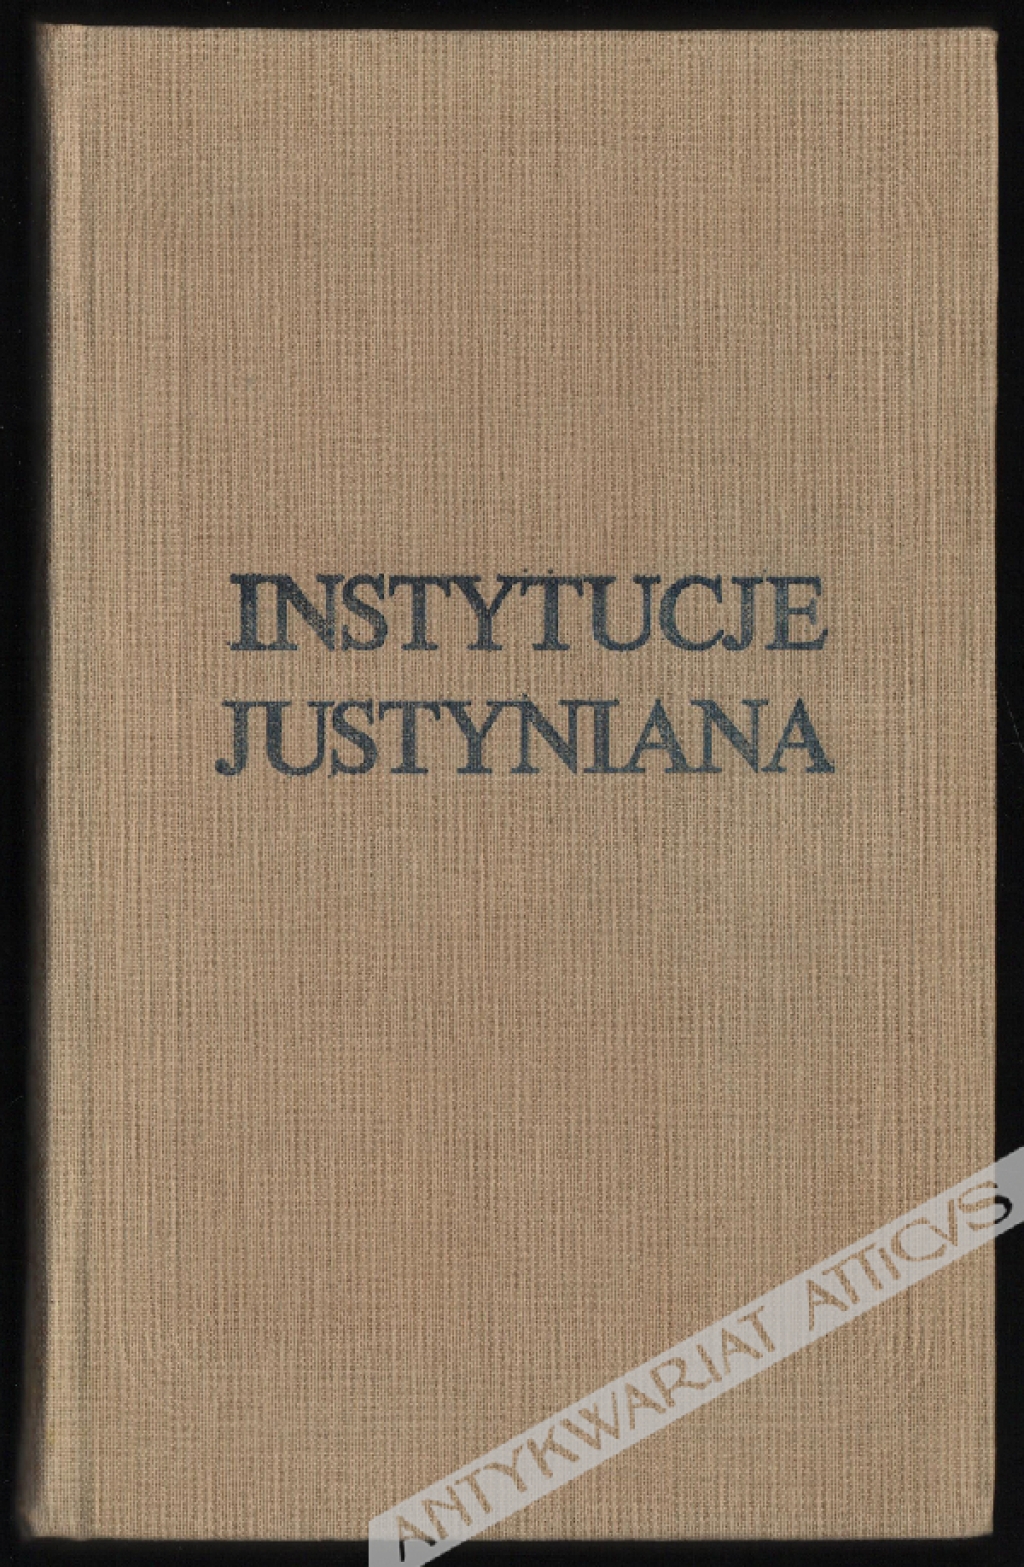 Instytucje Justyniana